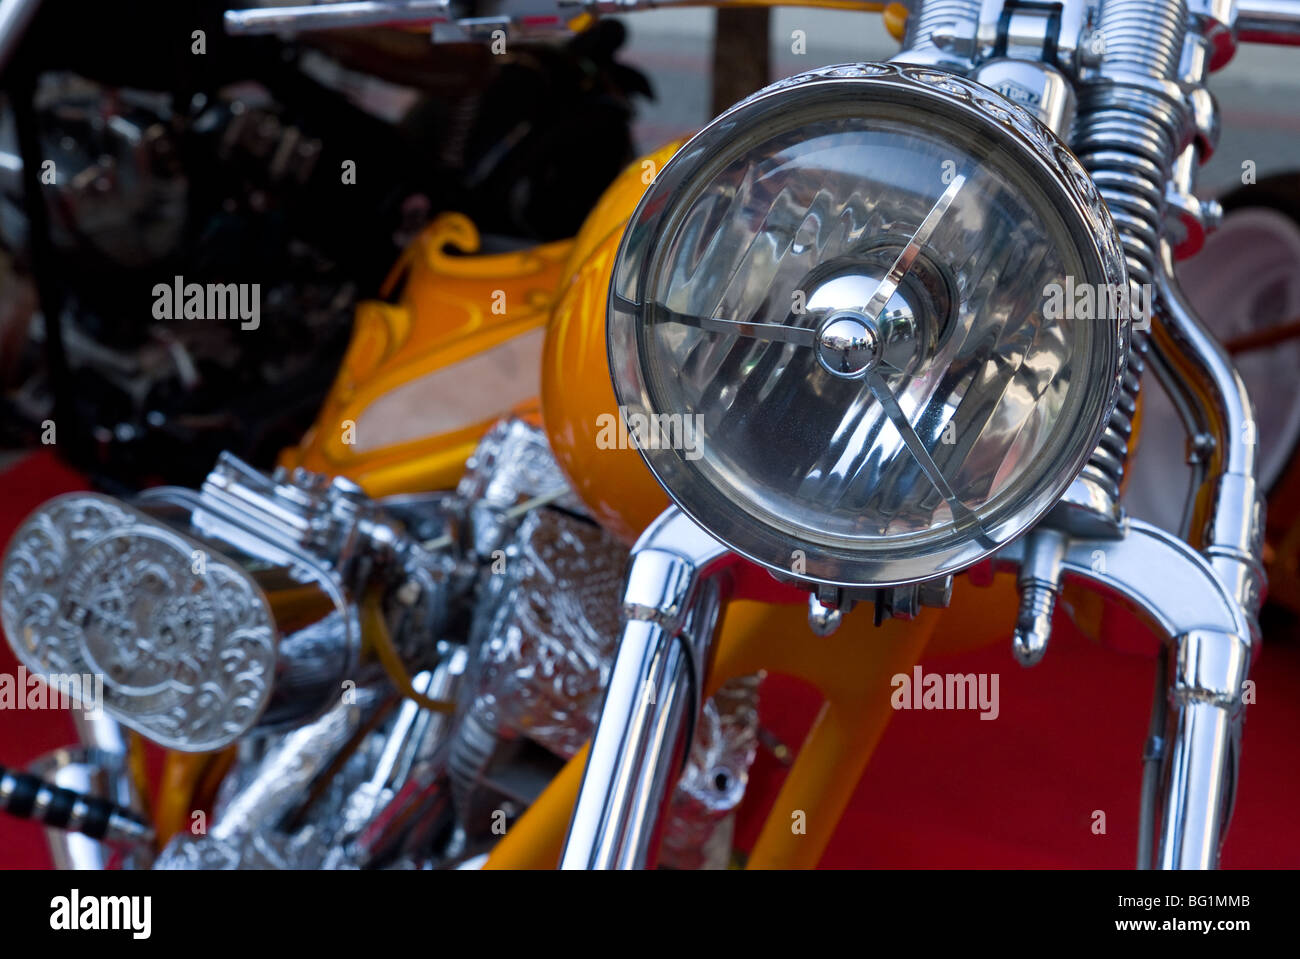 Vorderseite des custom gebaut, klassische Harley-Davidson Motorrad mit einer Fülle von verzierten Chrom. Stockfoto